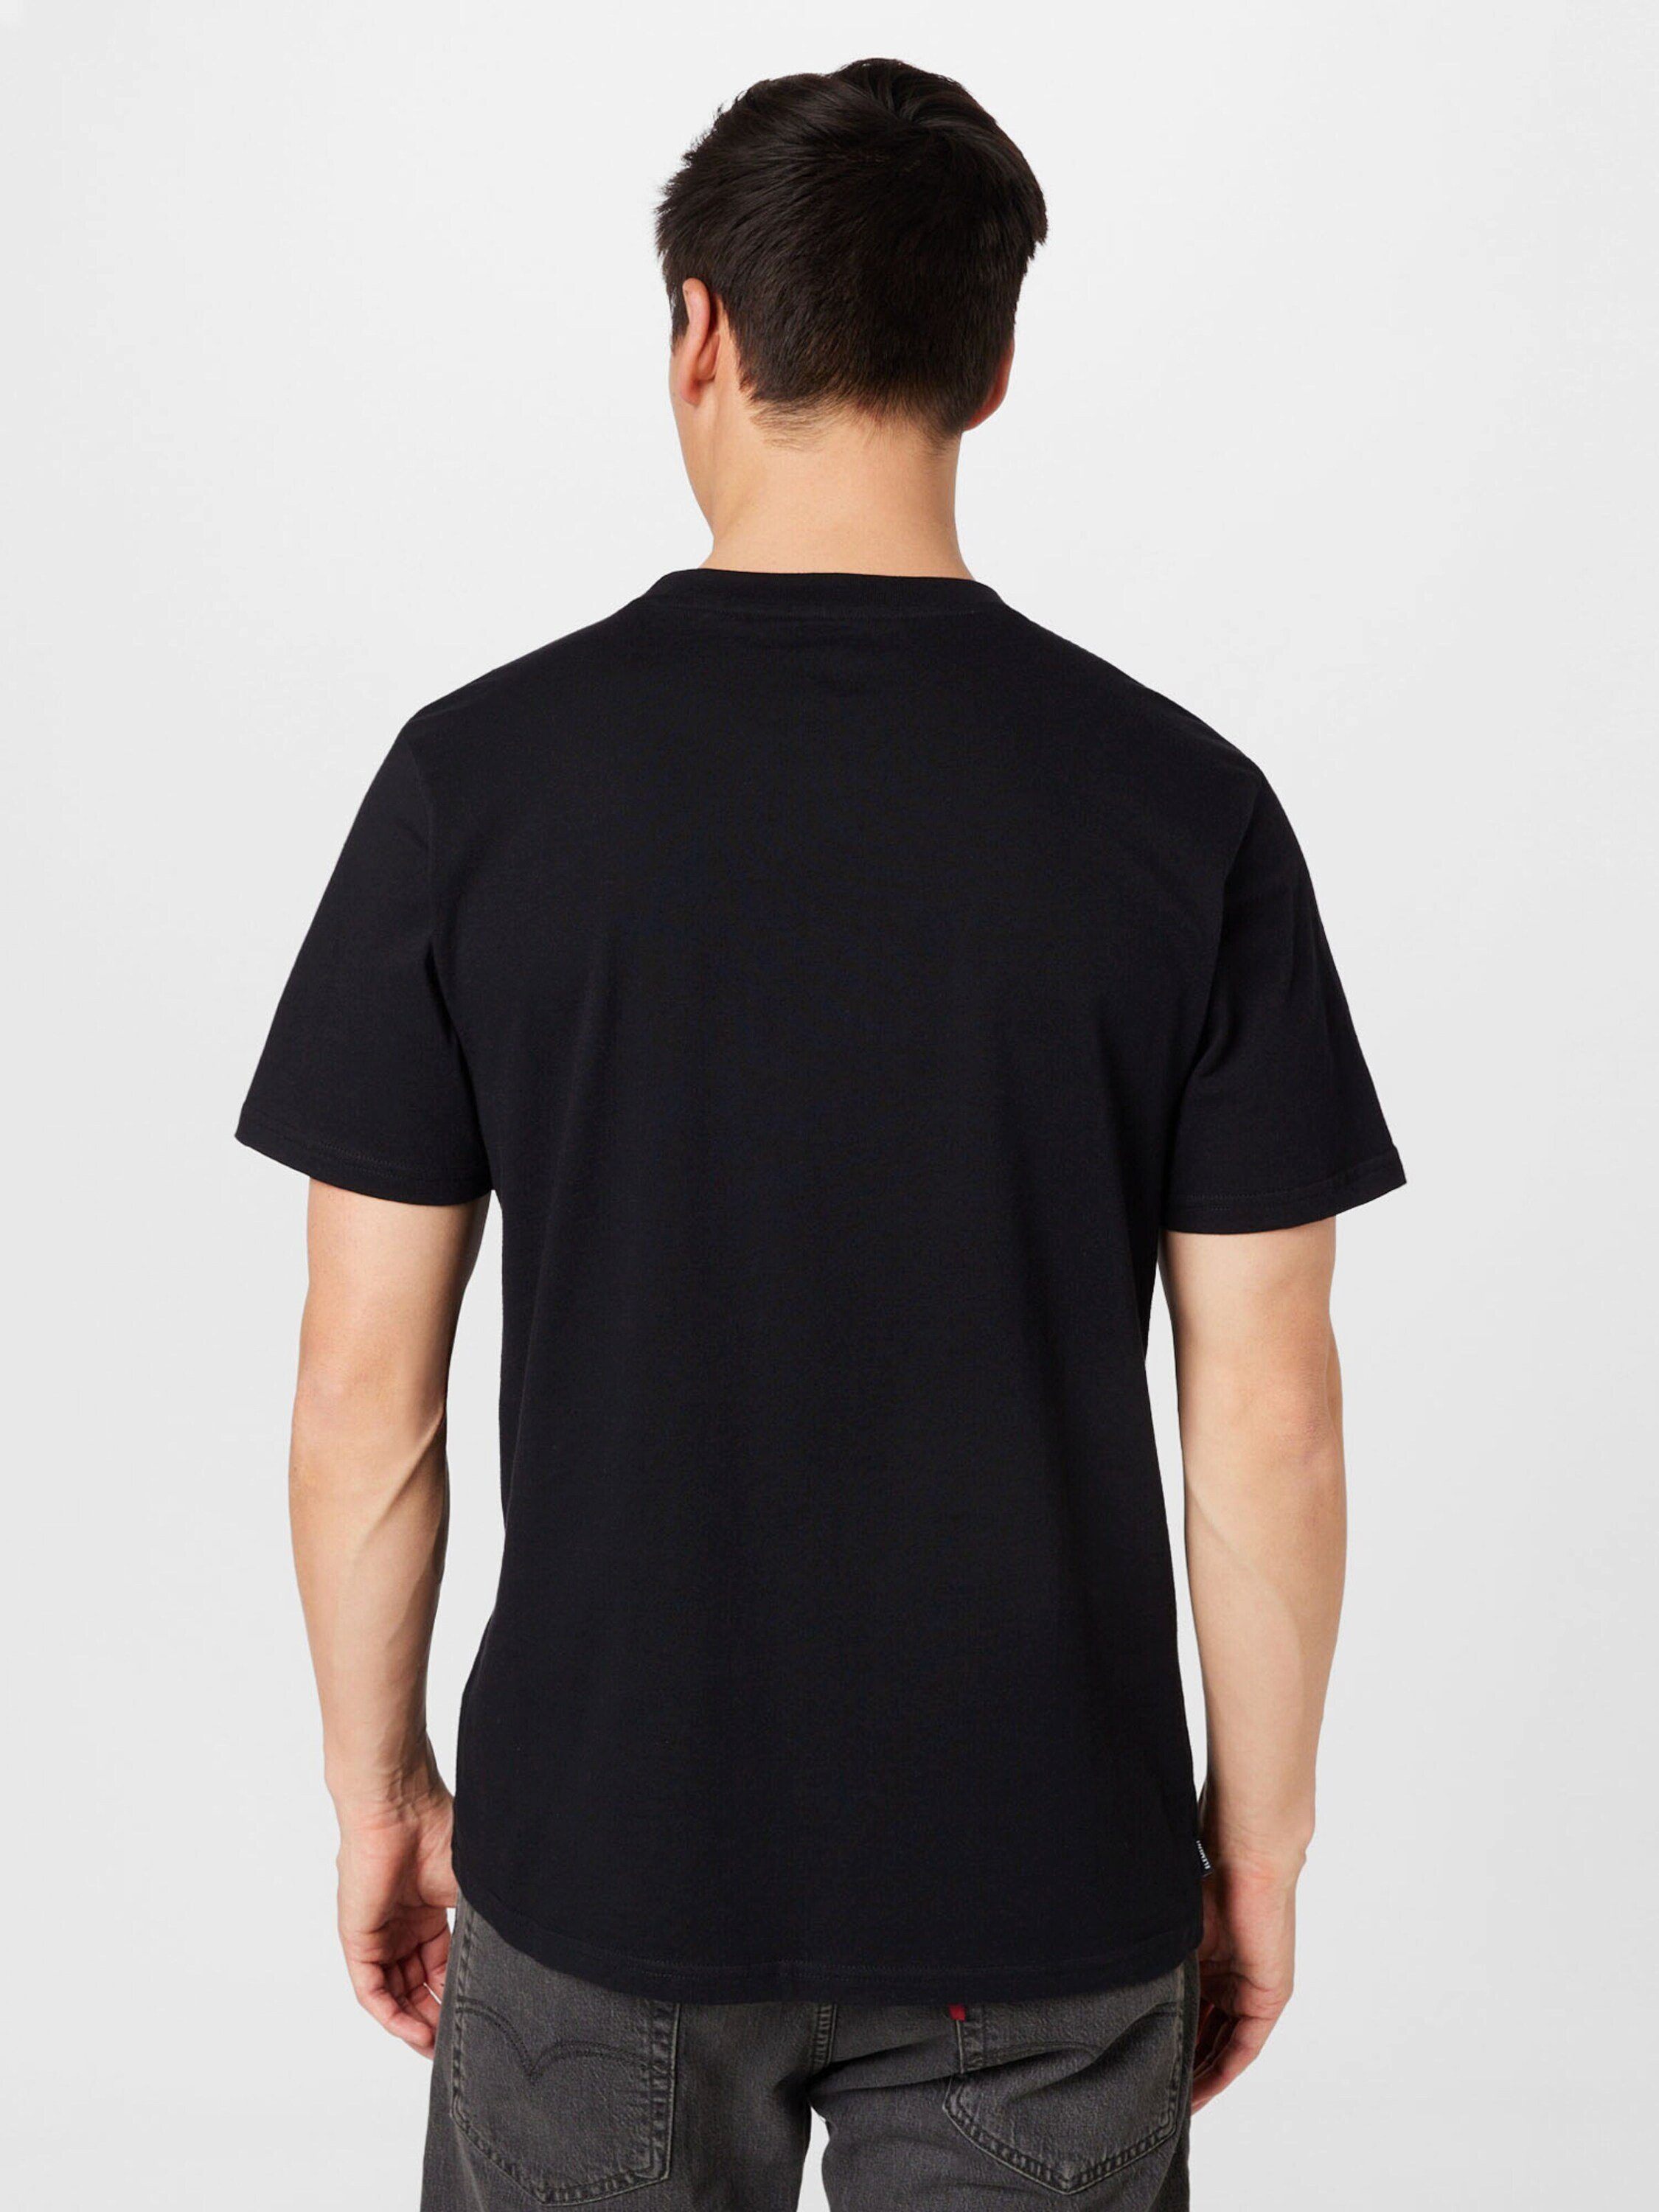 Element T-Shirt black flint (1-tlg) BLAZIN